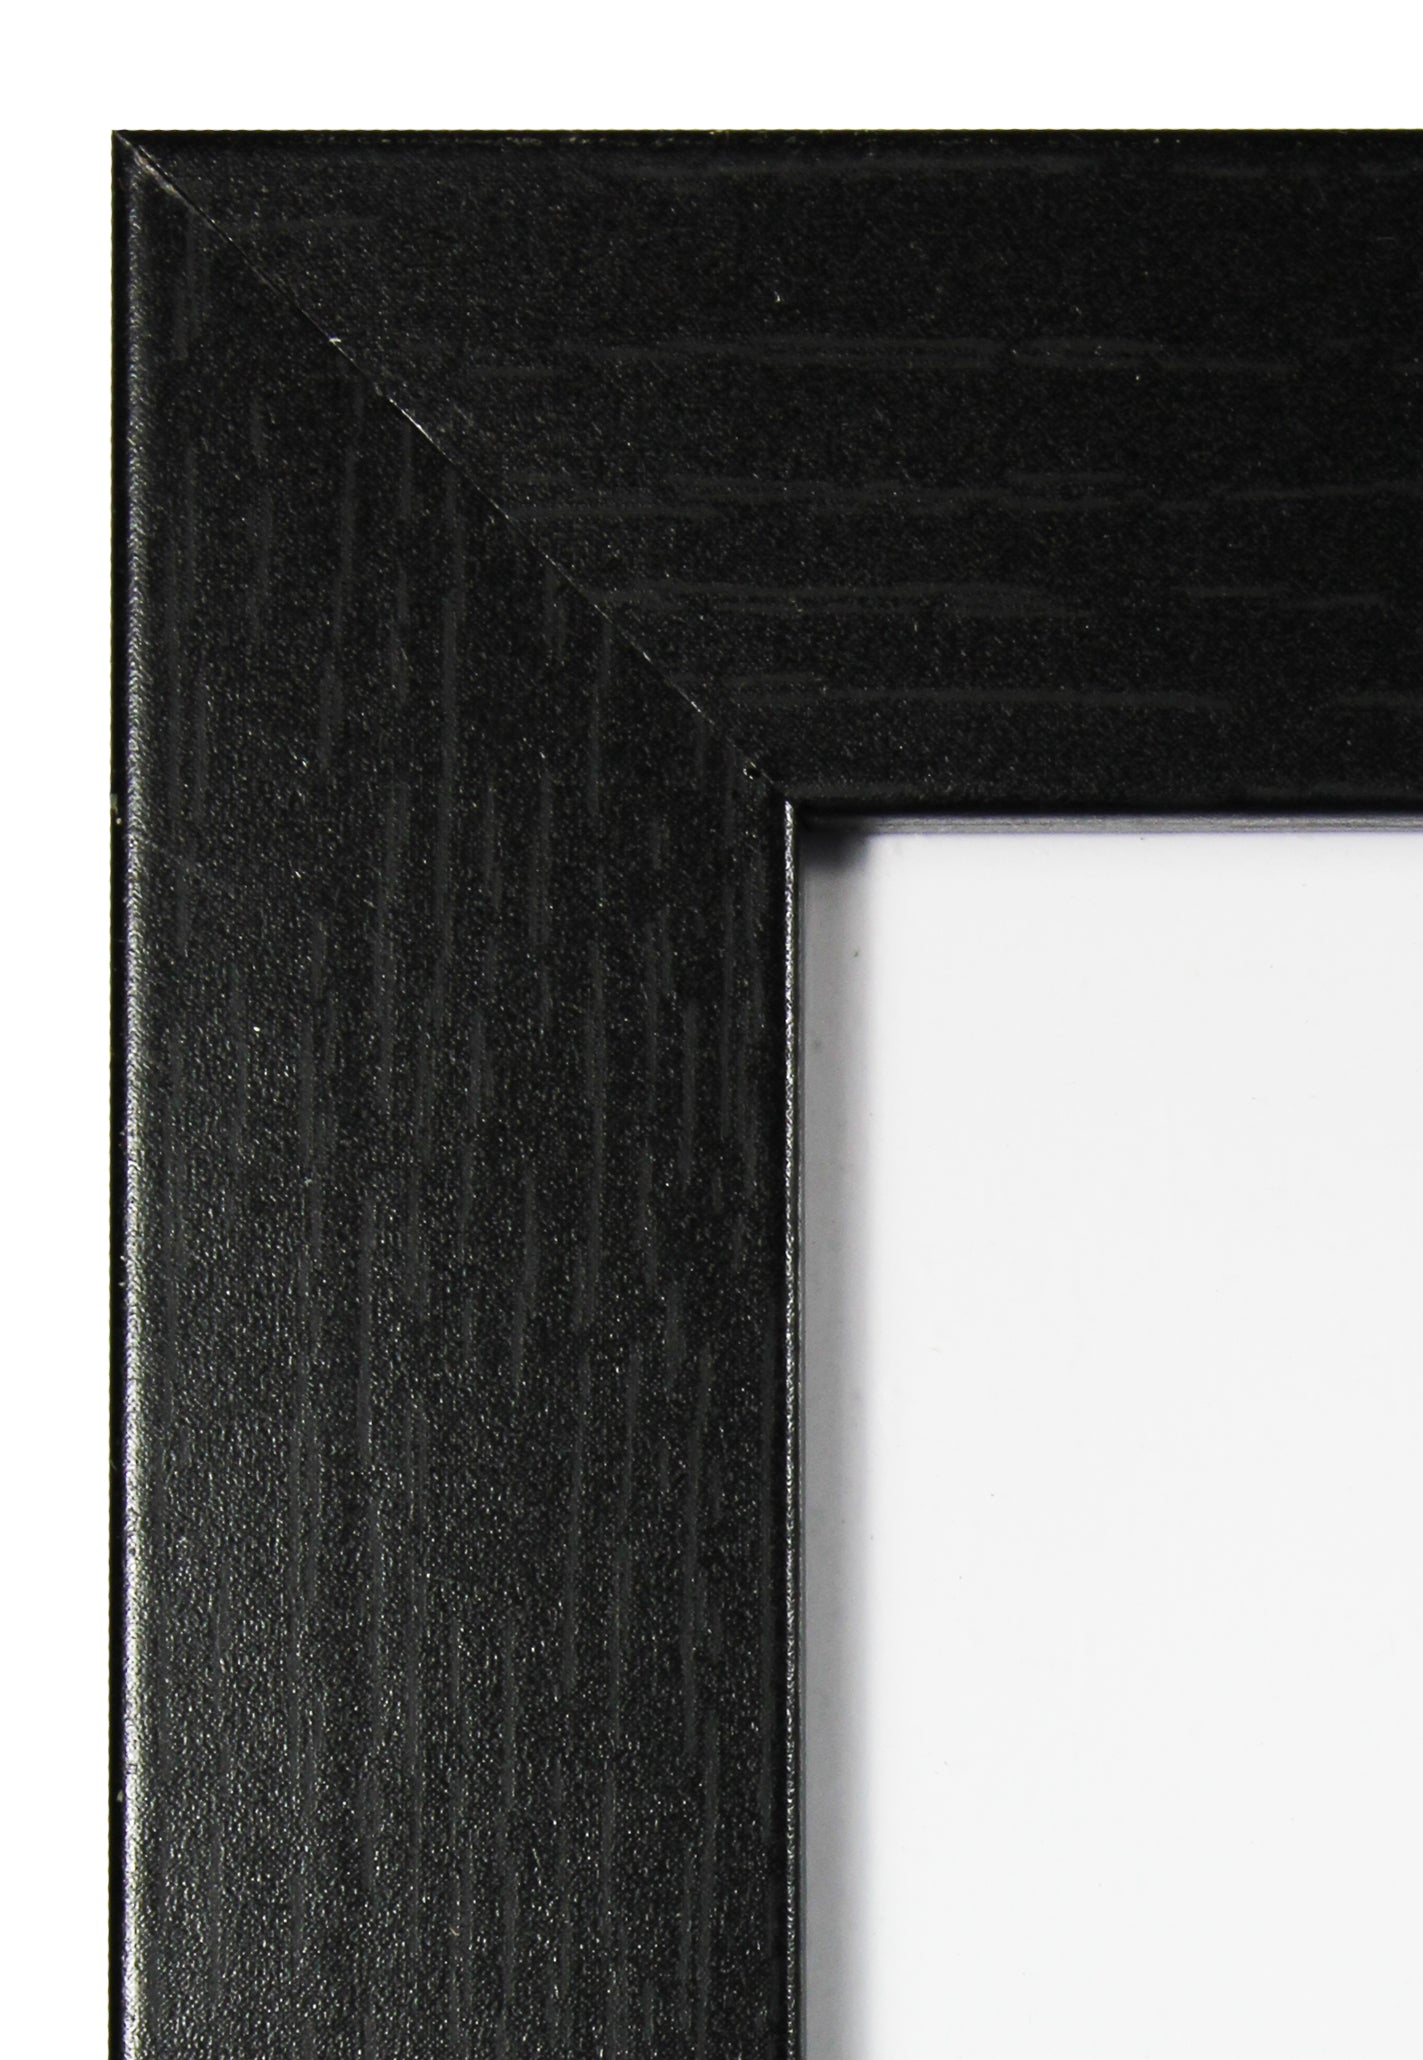 61x91.5cm Satin Black Wooden Poster Frame